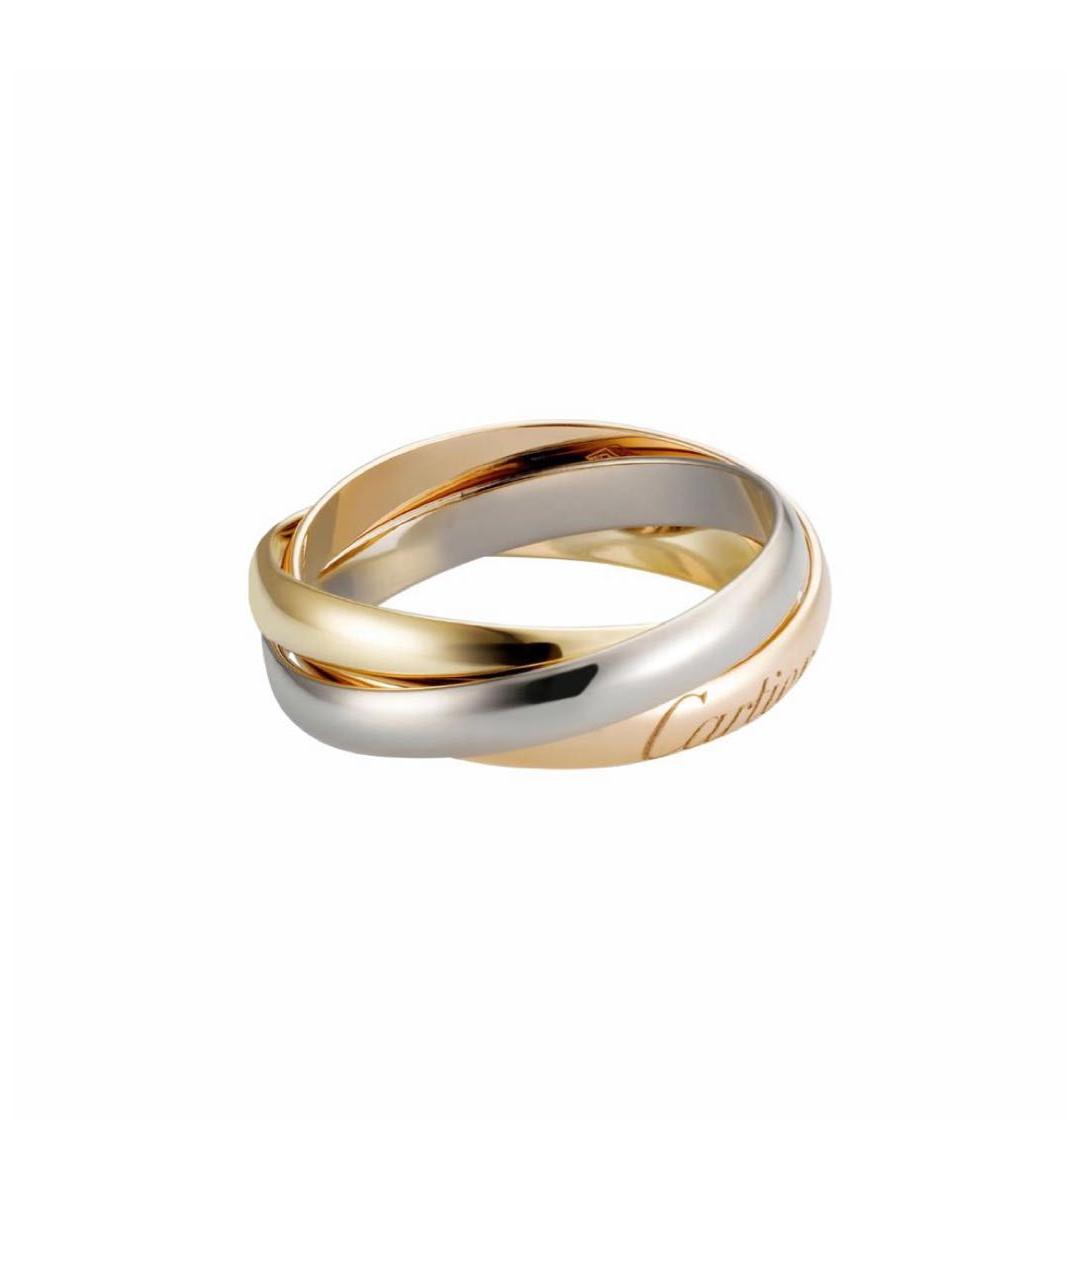 CARTIER Золотое кольцо из белого золота, фото 1